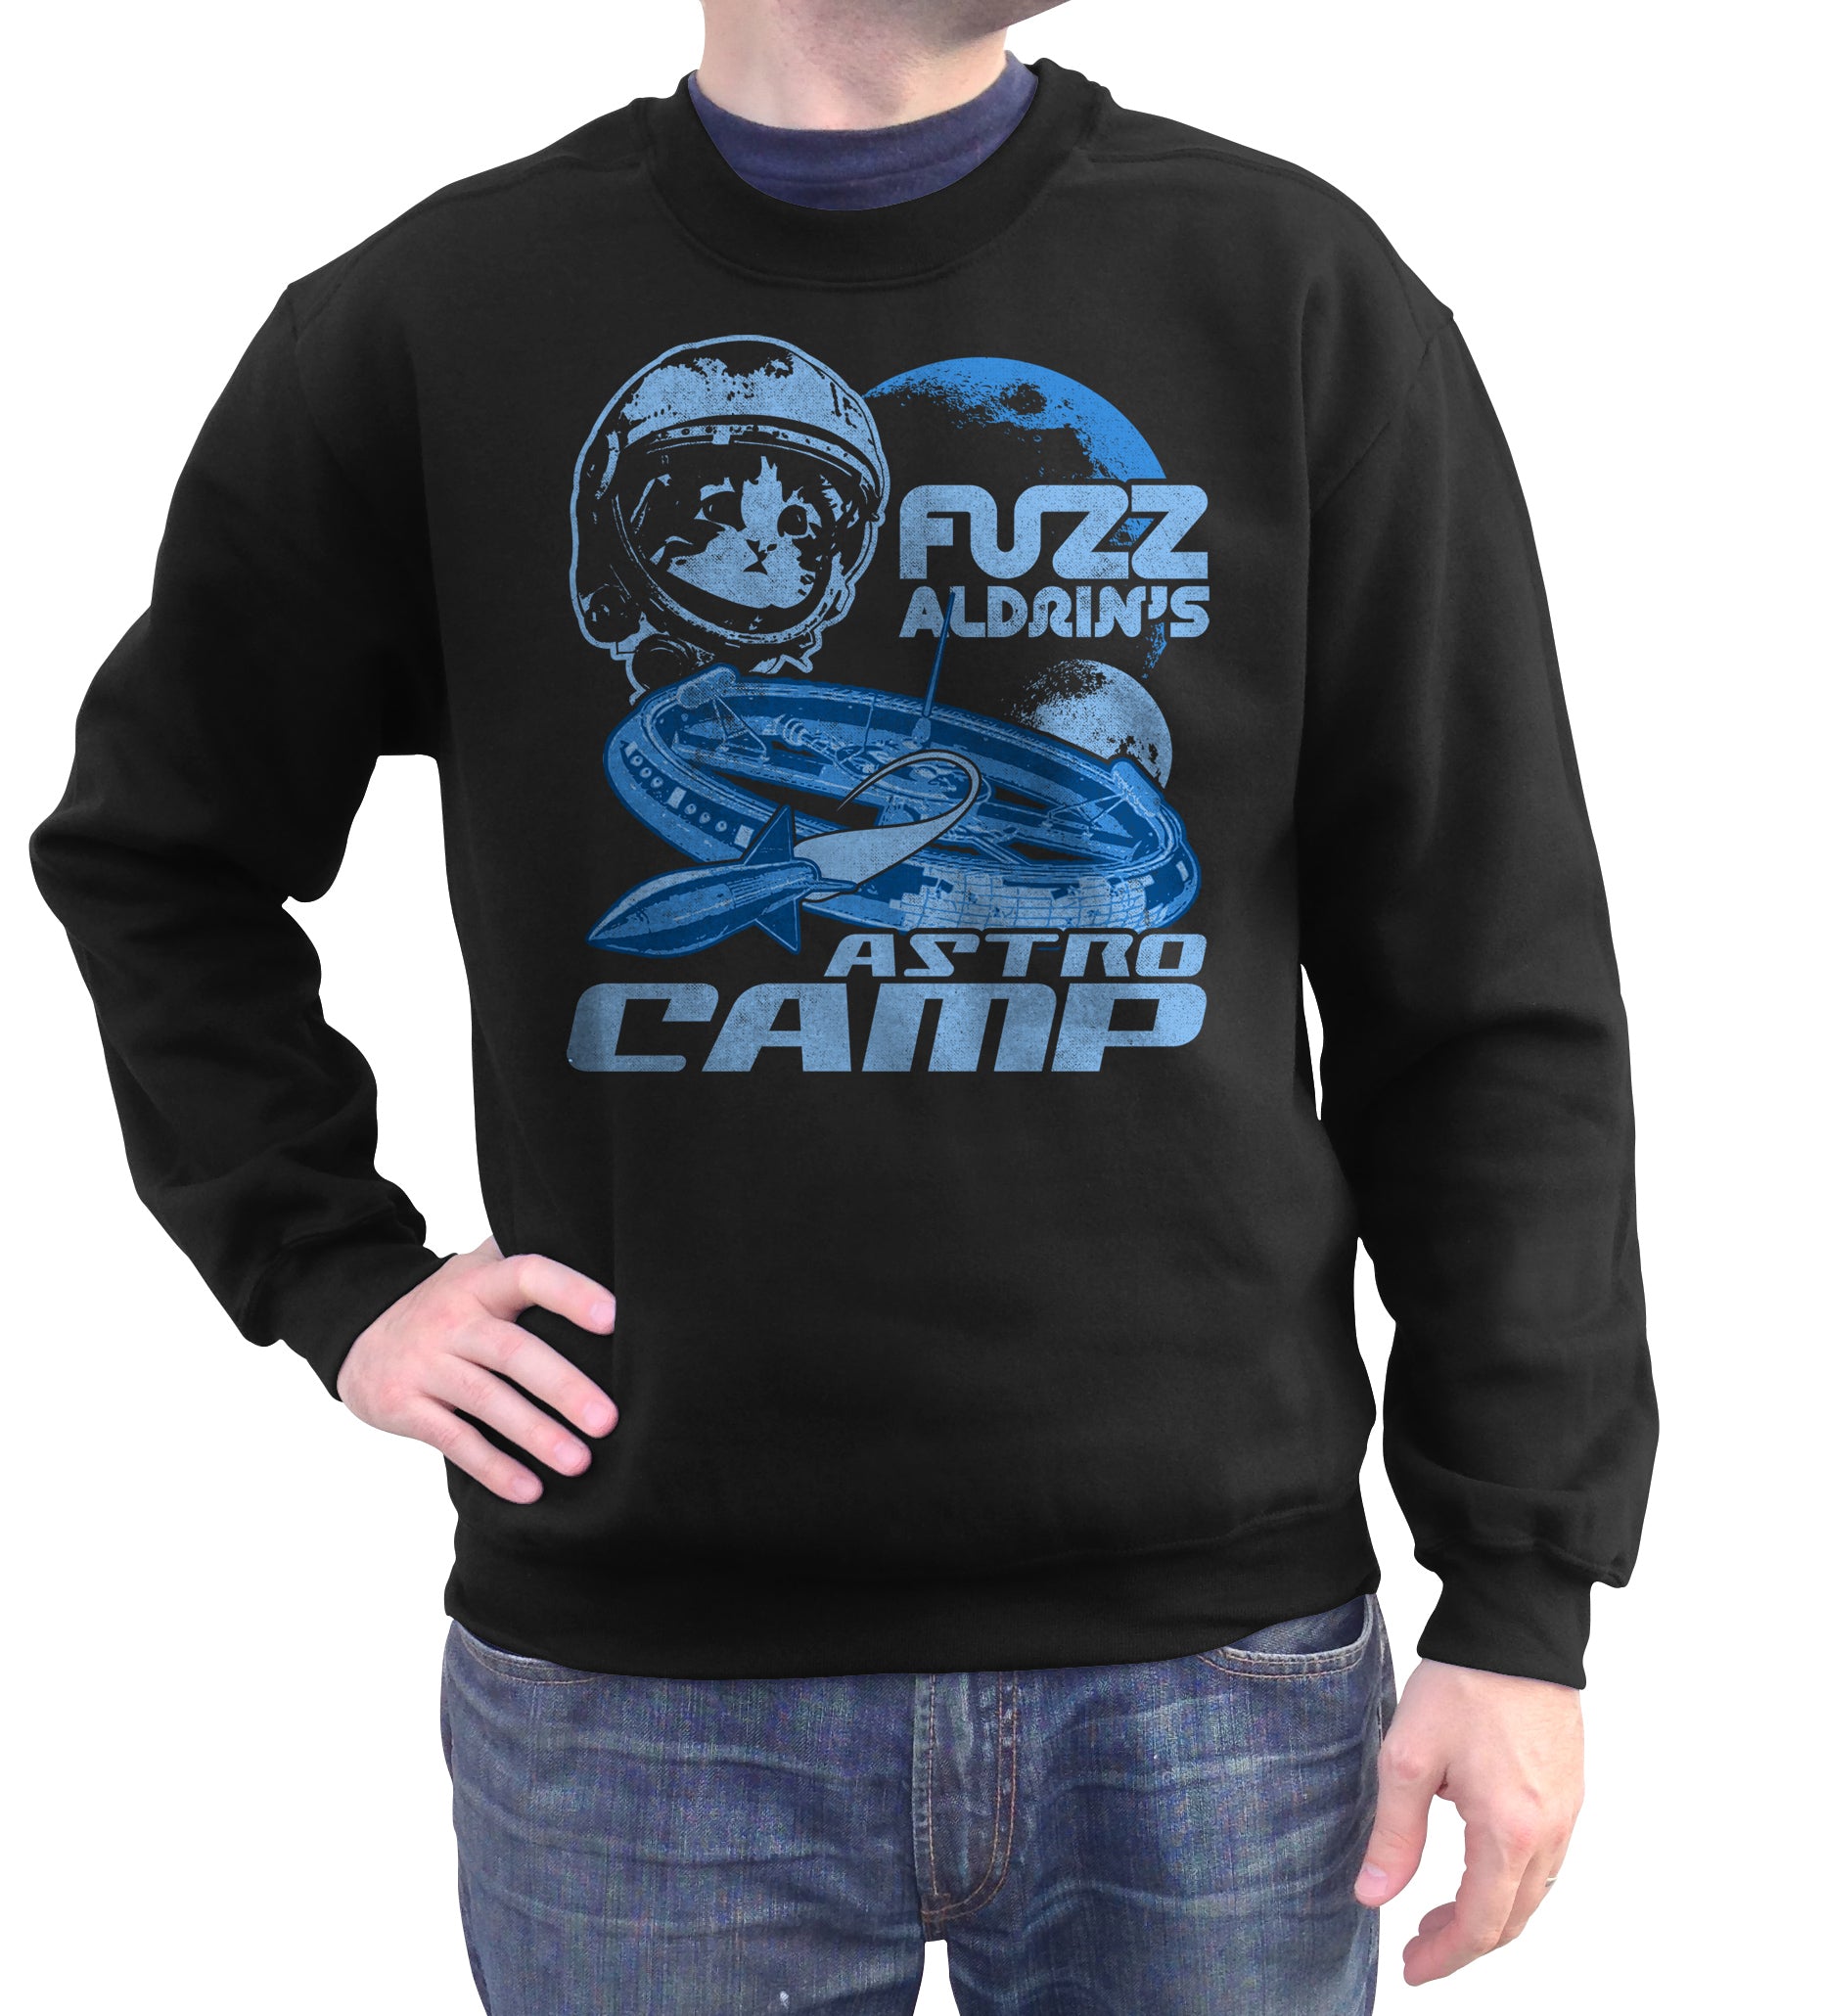 Unisex Fuzz Aldrin's Astrocamp Sweatshirt - By Ex-Boyfriend